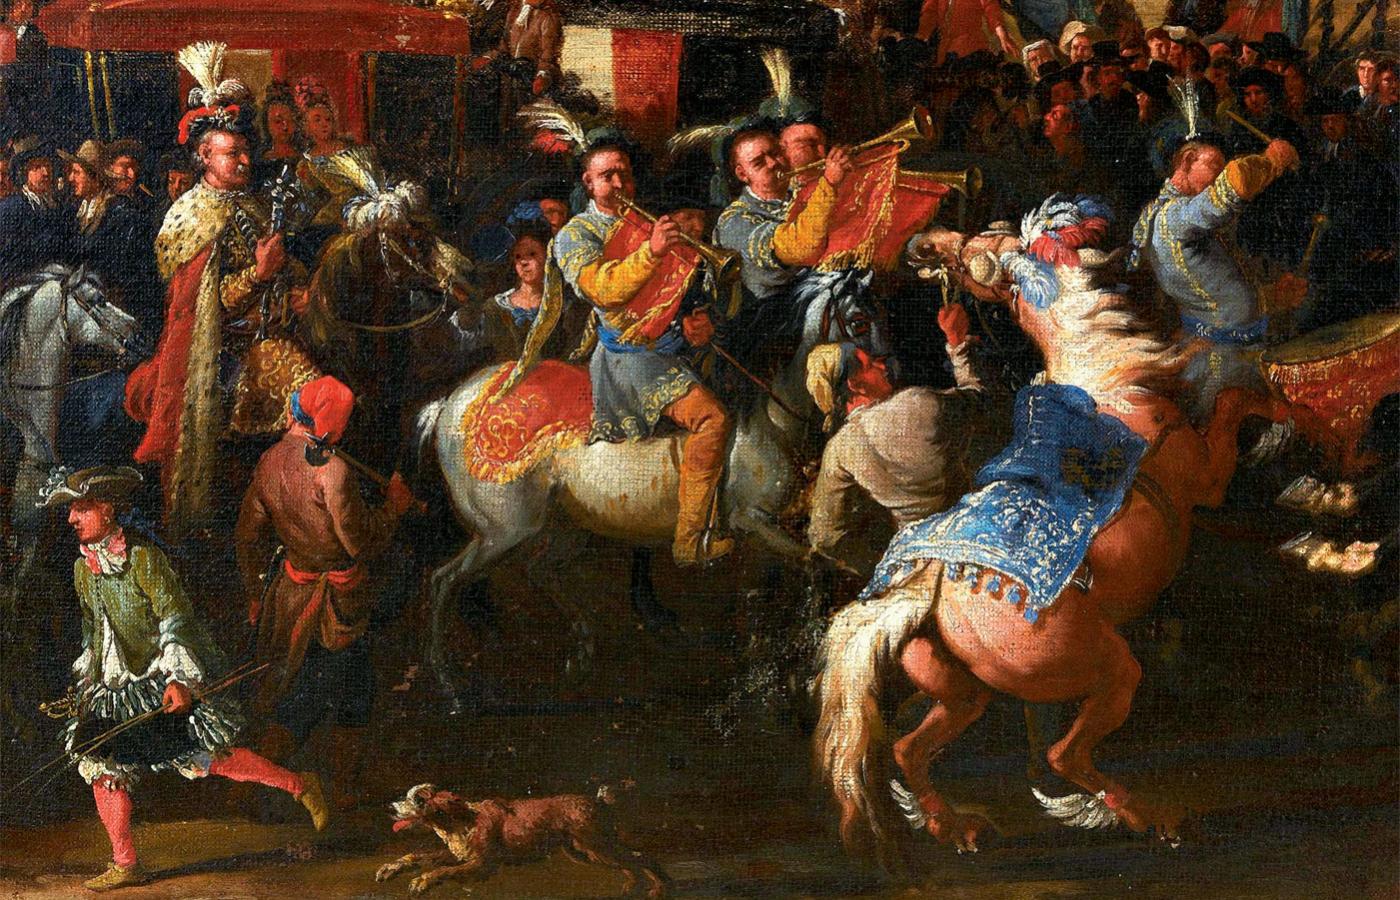 Wjazd Michała Kazimierza Radziwiłła do Rzymu w 1680 r. (fragment obrazu), Niccolo Viviani Codazzi i Pieter van Bloemen, koniec XVII w.